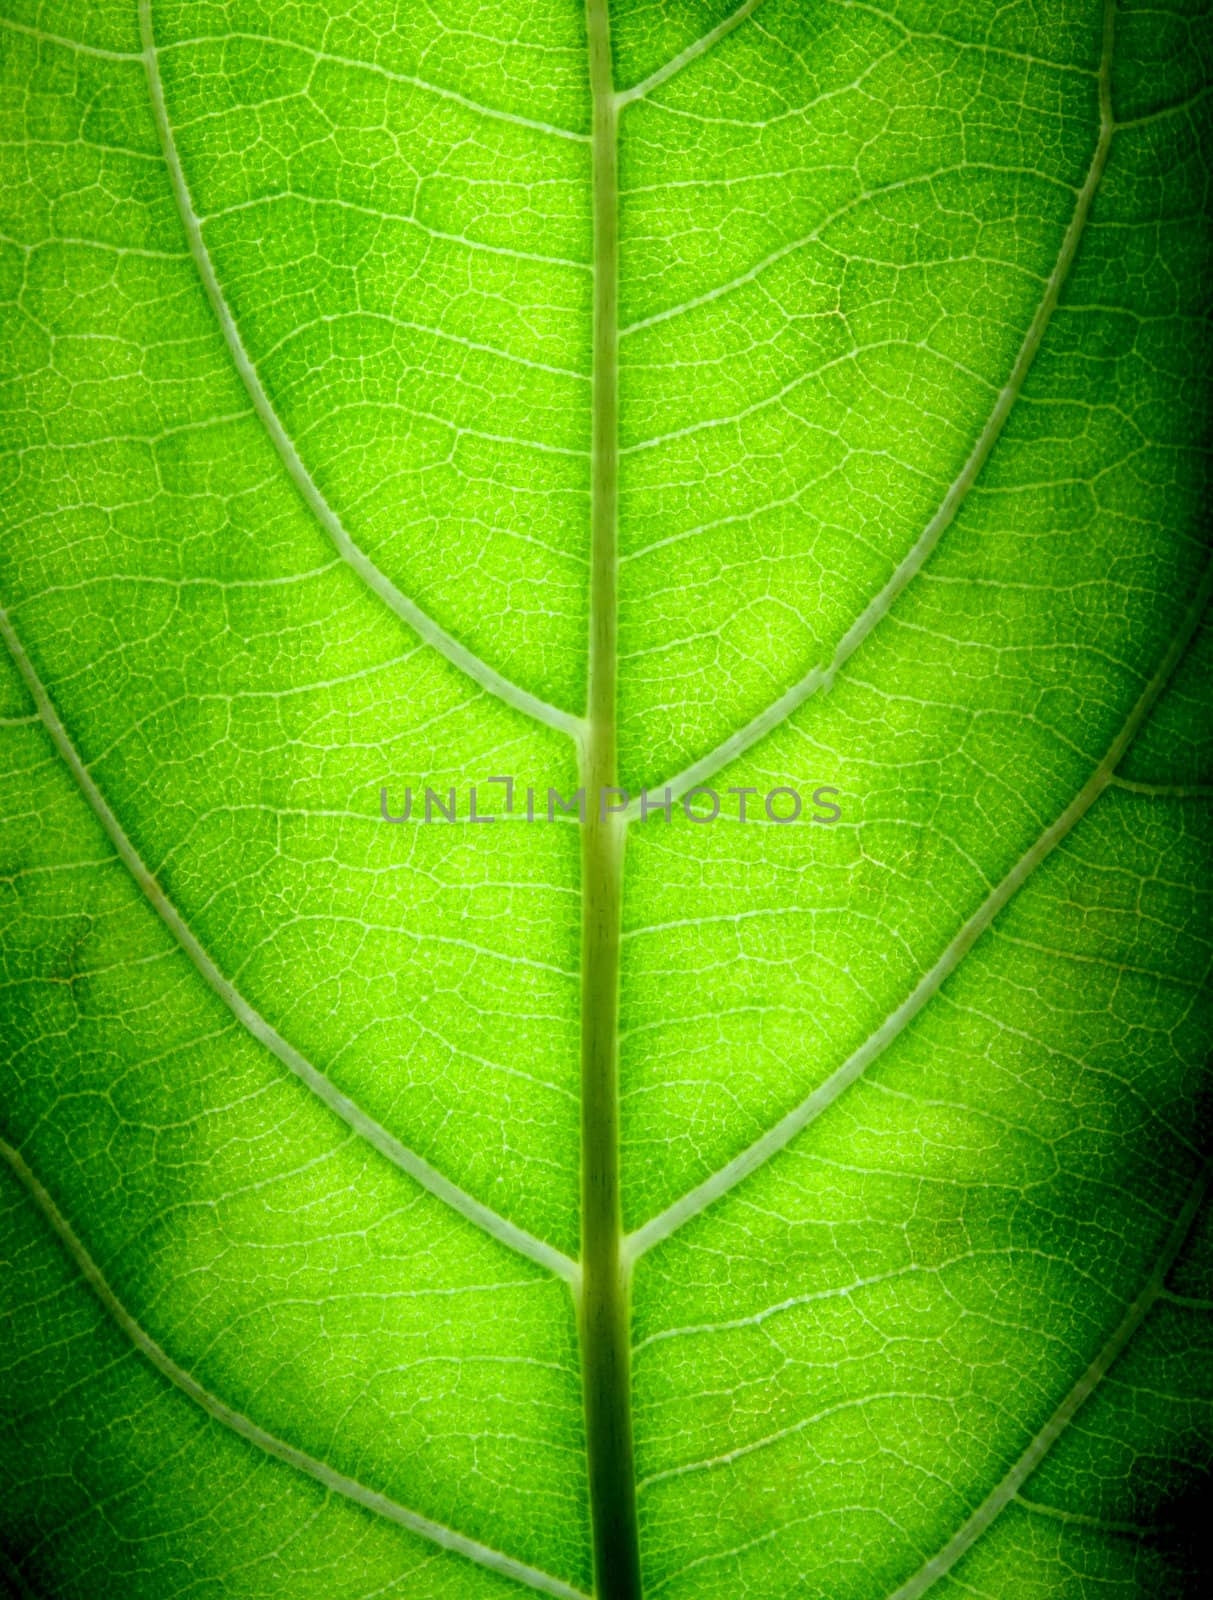 Big Green Leaf by ferdie2551